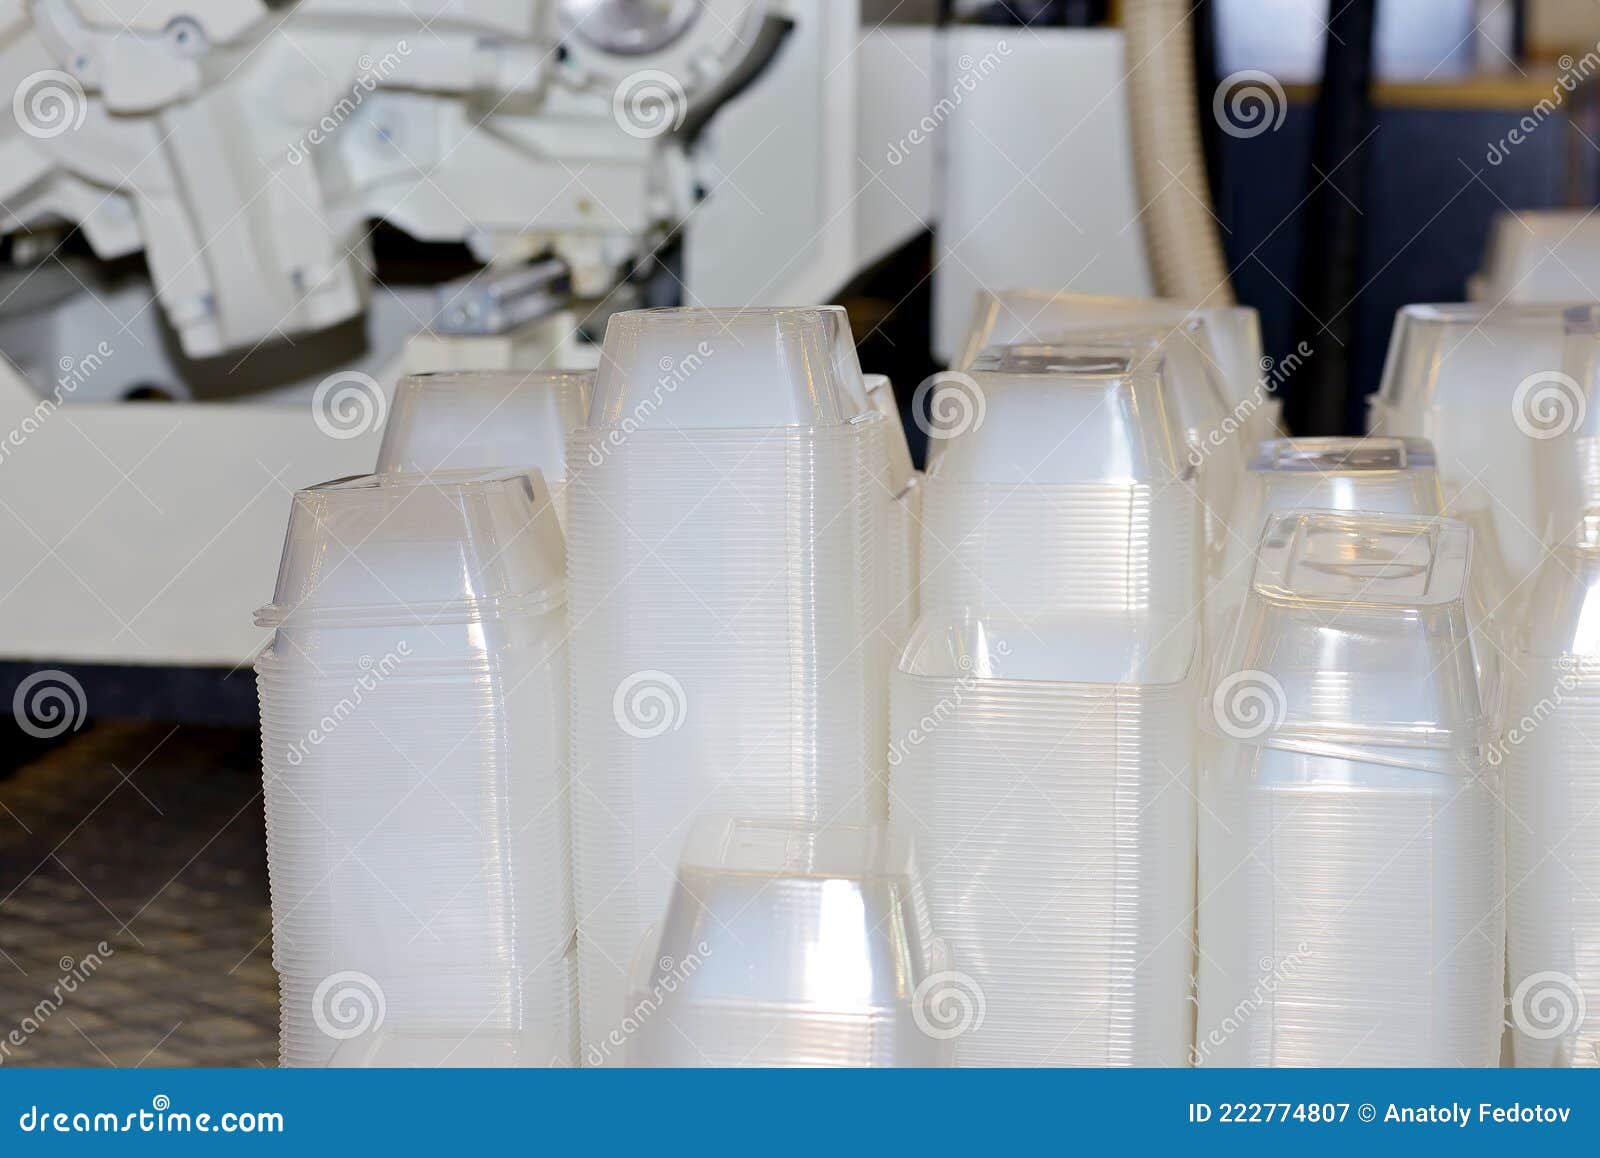 Produzione Industriale Di Contenitori in Plastica Usa E Getta Immagine  Stock - Immagine di caso, pranzo: 222774807